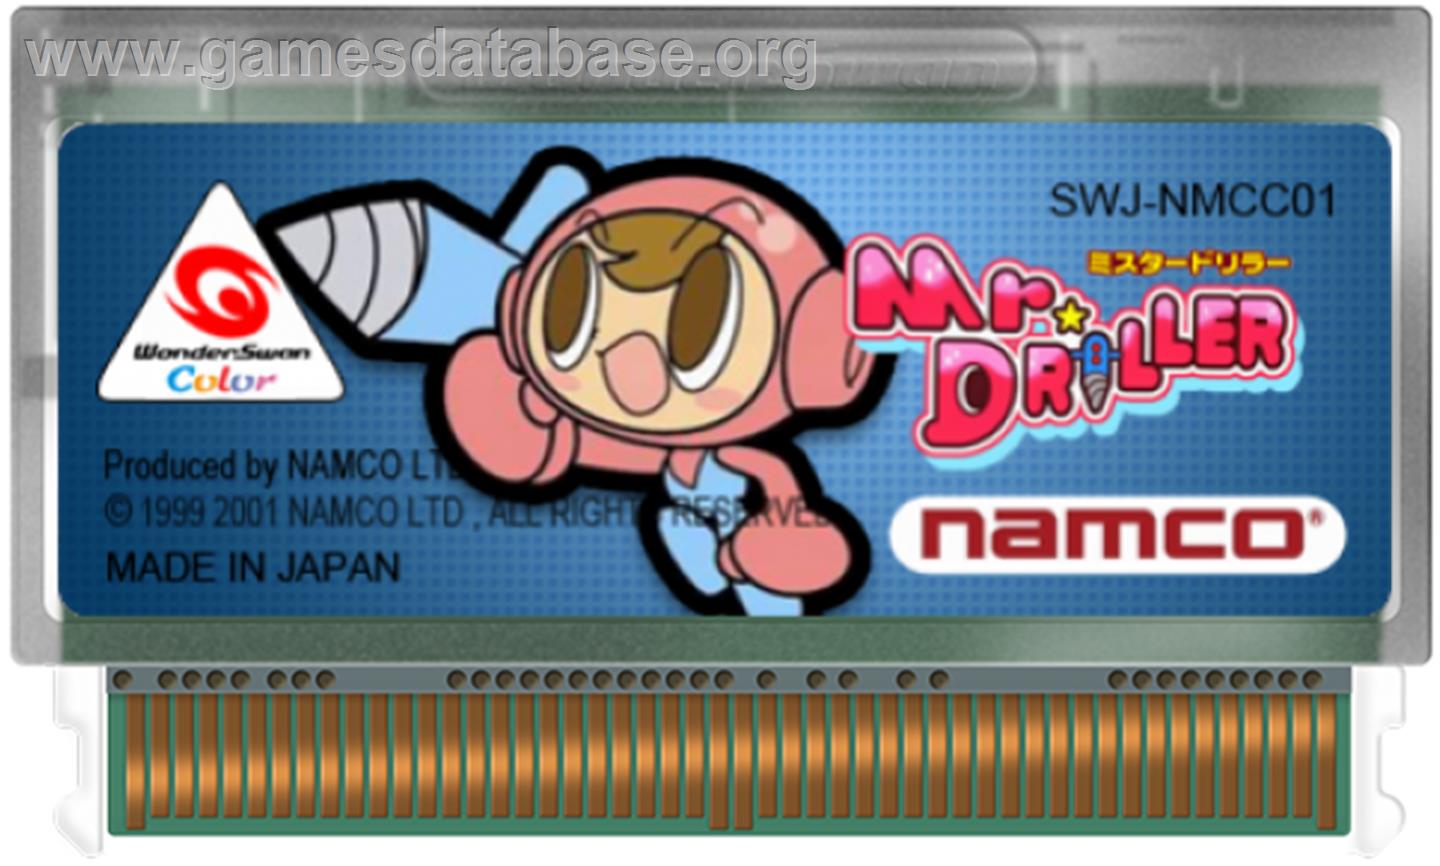 Mr Driller - Bandai WonderSwan Color - Artwork - Cartridge